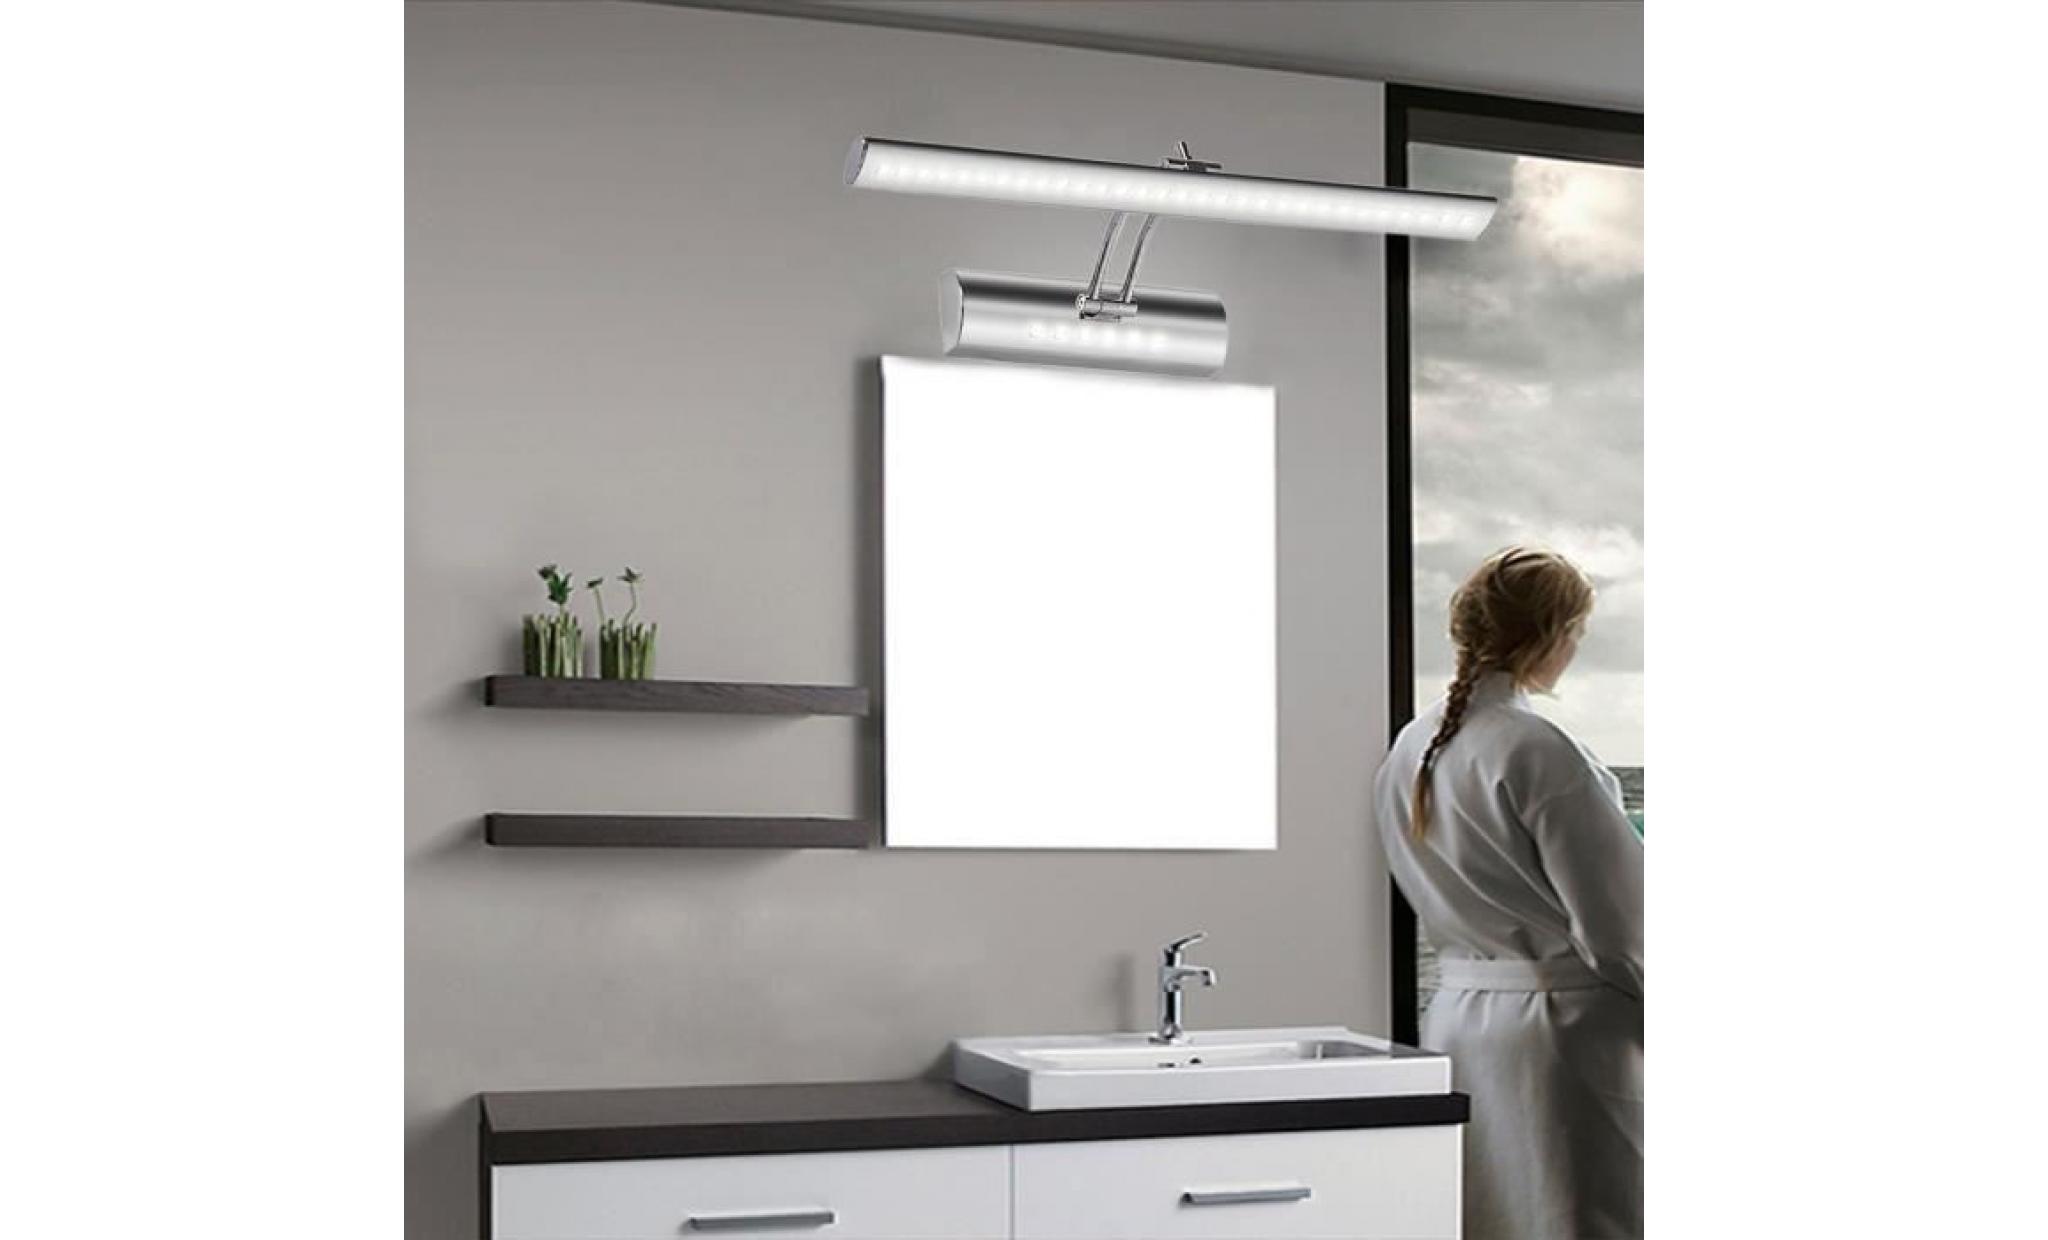 lampe ampoule 36leds smd5050 lumière blanc 7w pour salle de bain miroir tableau mur mural applique pas cher